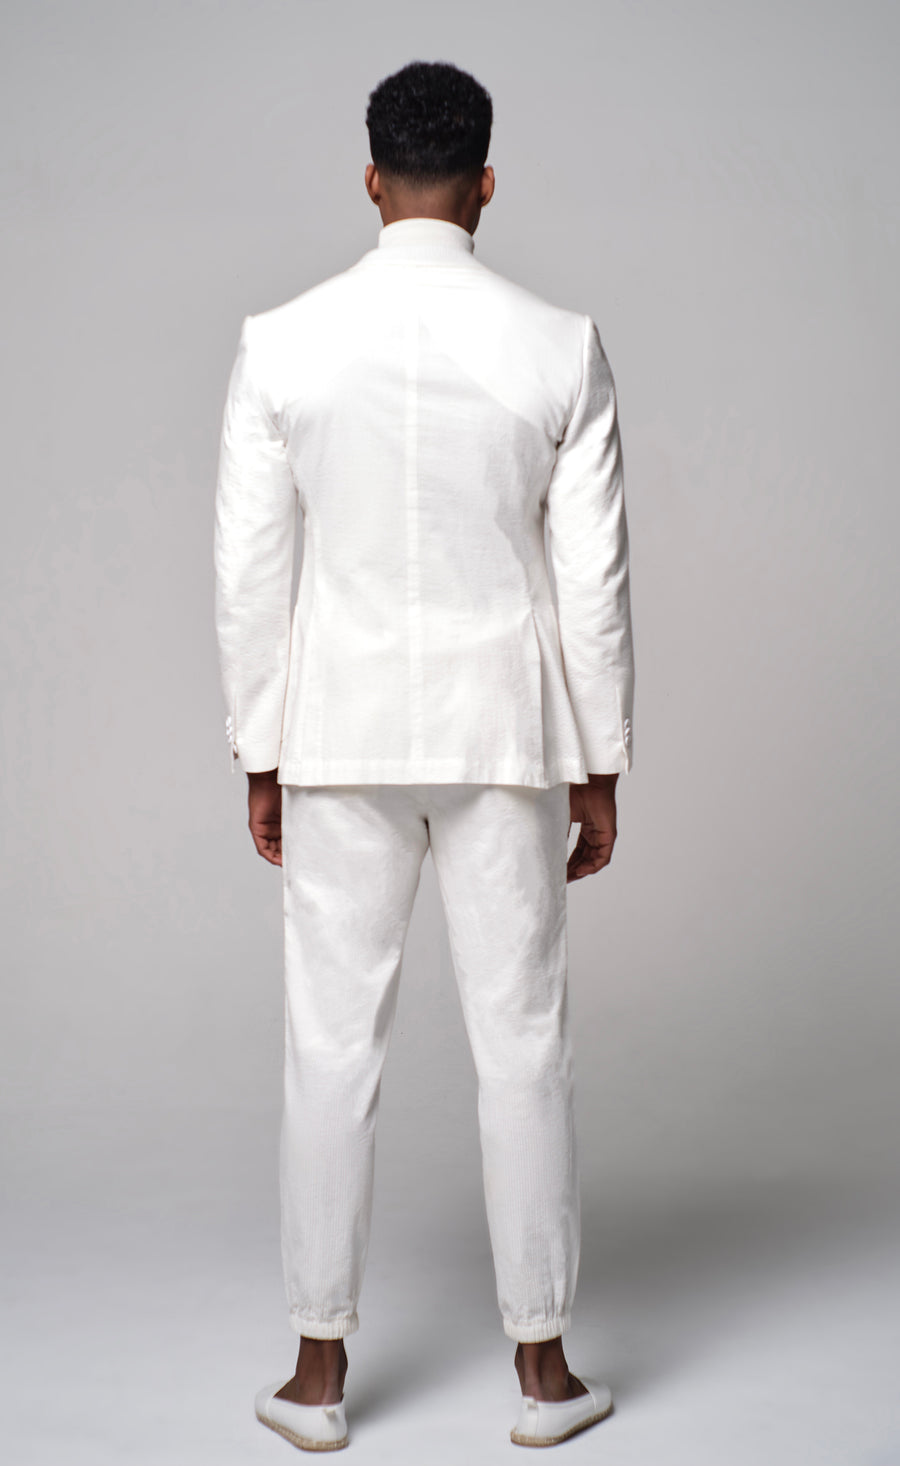 Cloud White Seersucker Suit Jacket